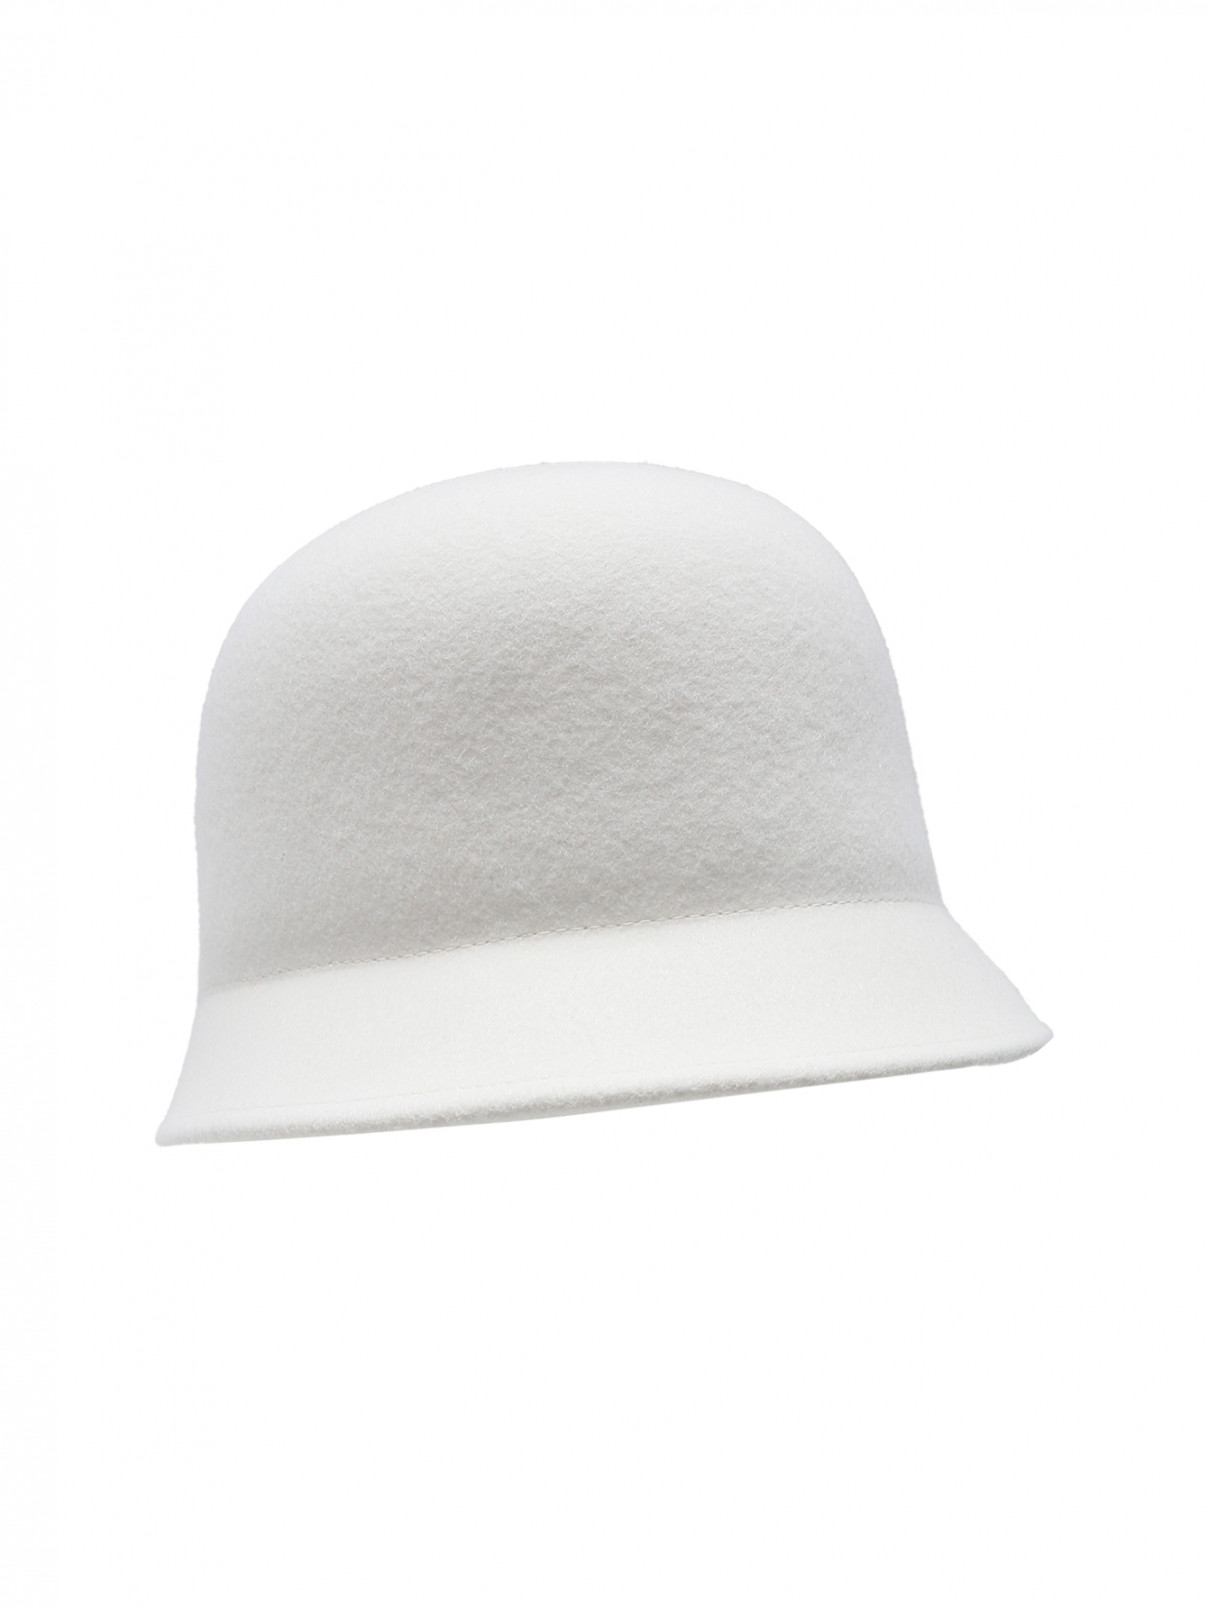 Шляпа из шерсти Nina Ricci  –  Обтравка1  – Цвет:  Белый